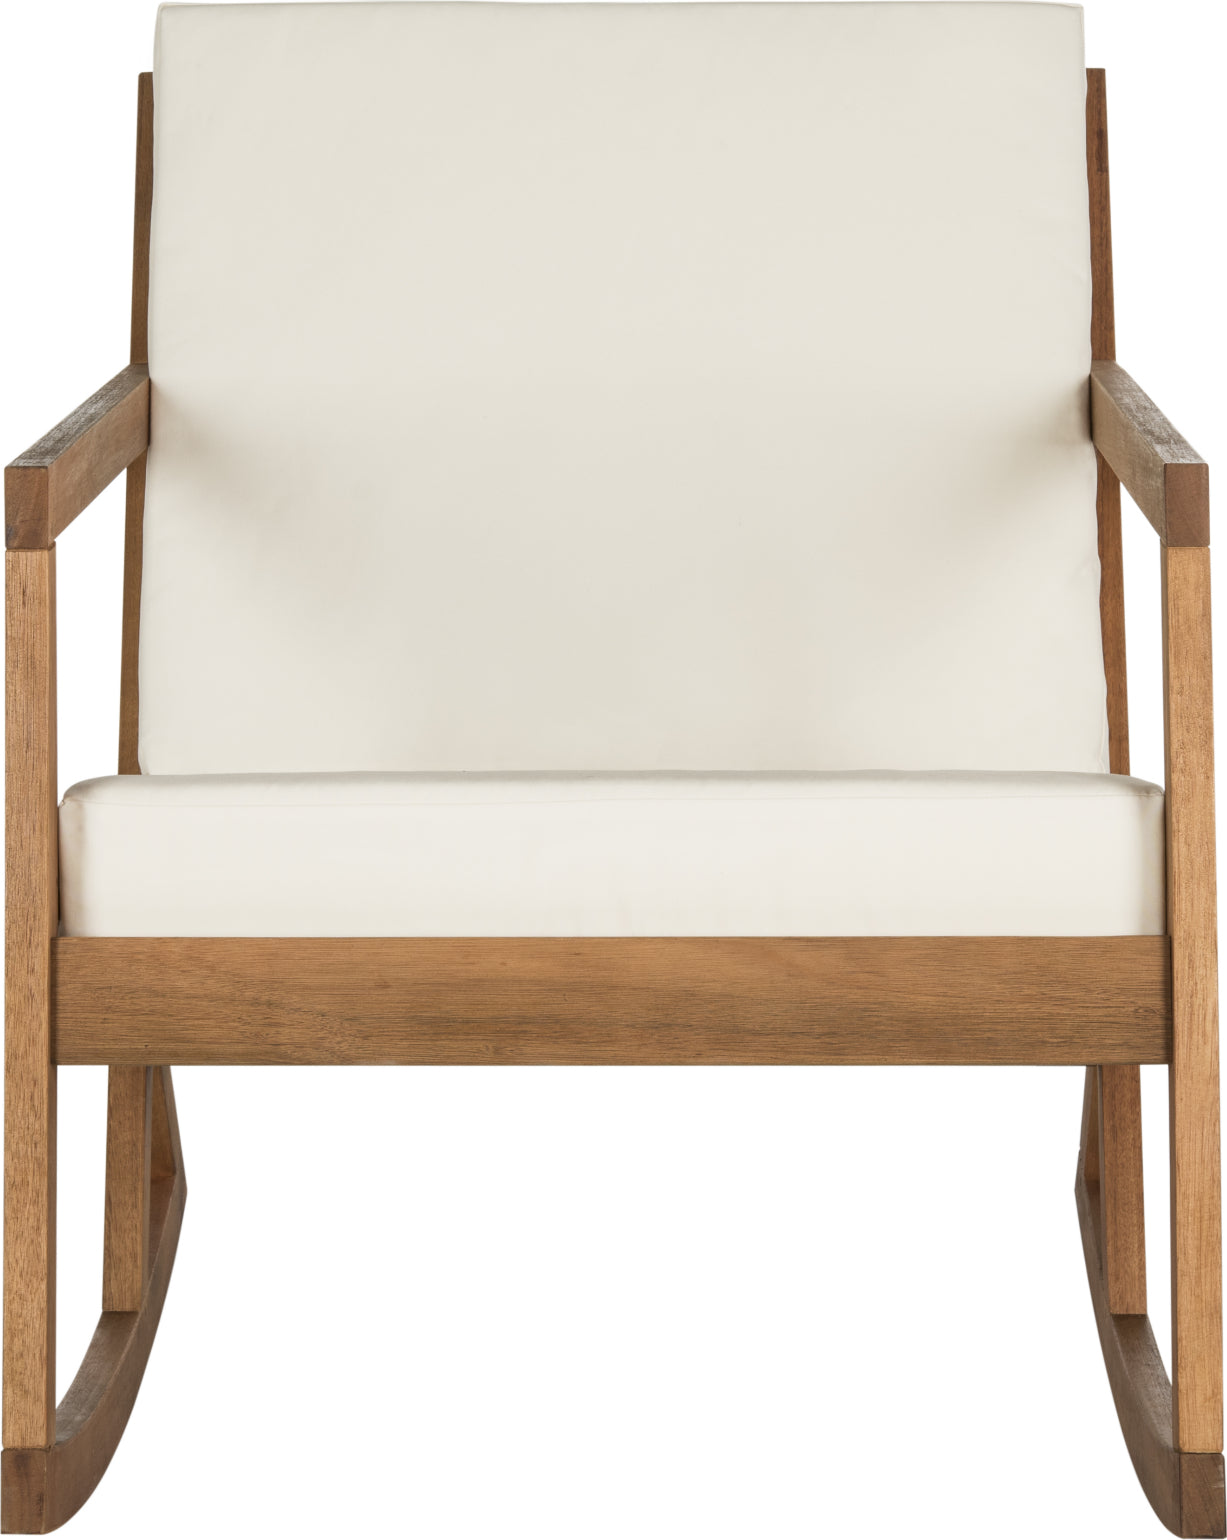 Safavieh Vernon Rocking Chair Teak Brown/Beige Furniture main image